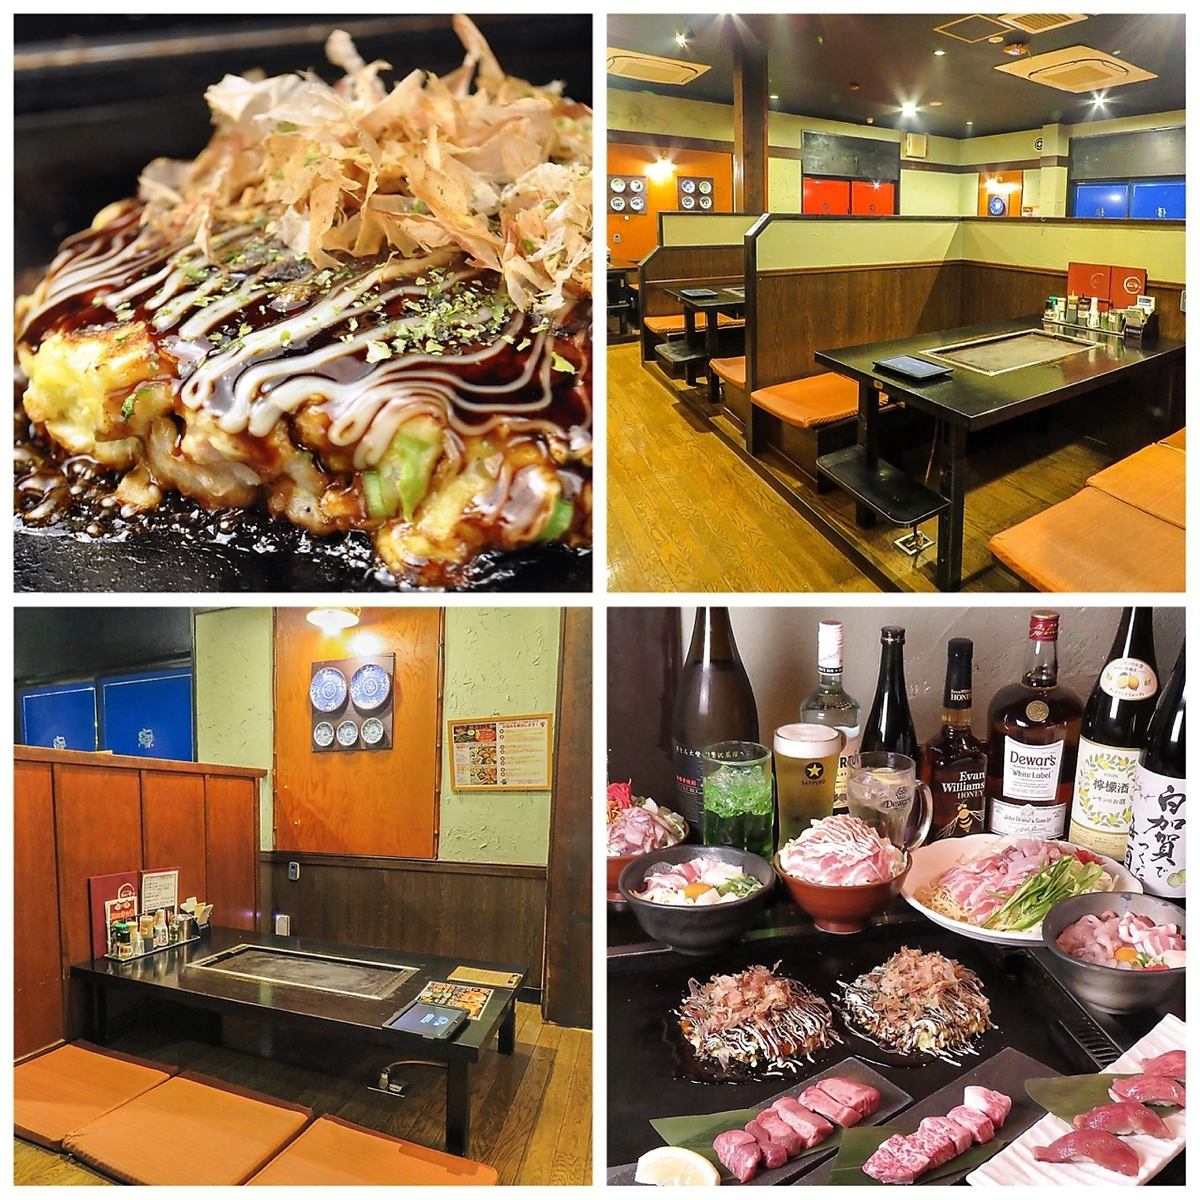 ◆如果您想吃美味的okonomiyaki和monja，请在这里◆从小团体到大型宴会◎